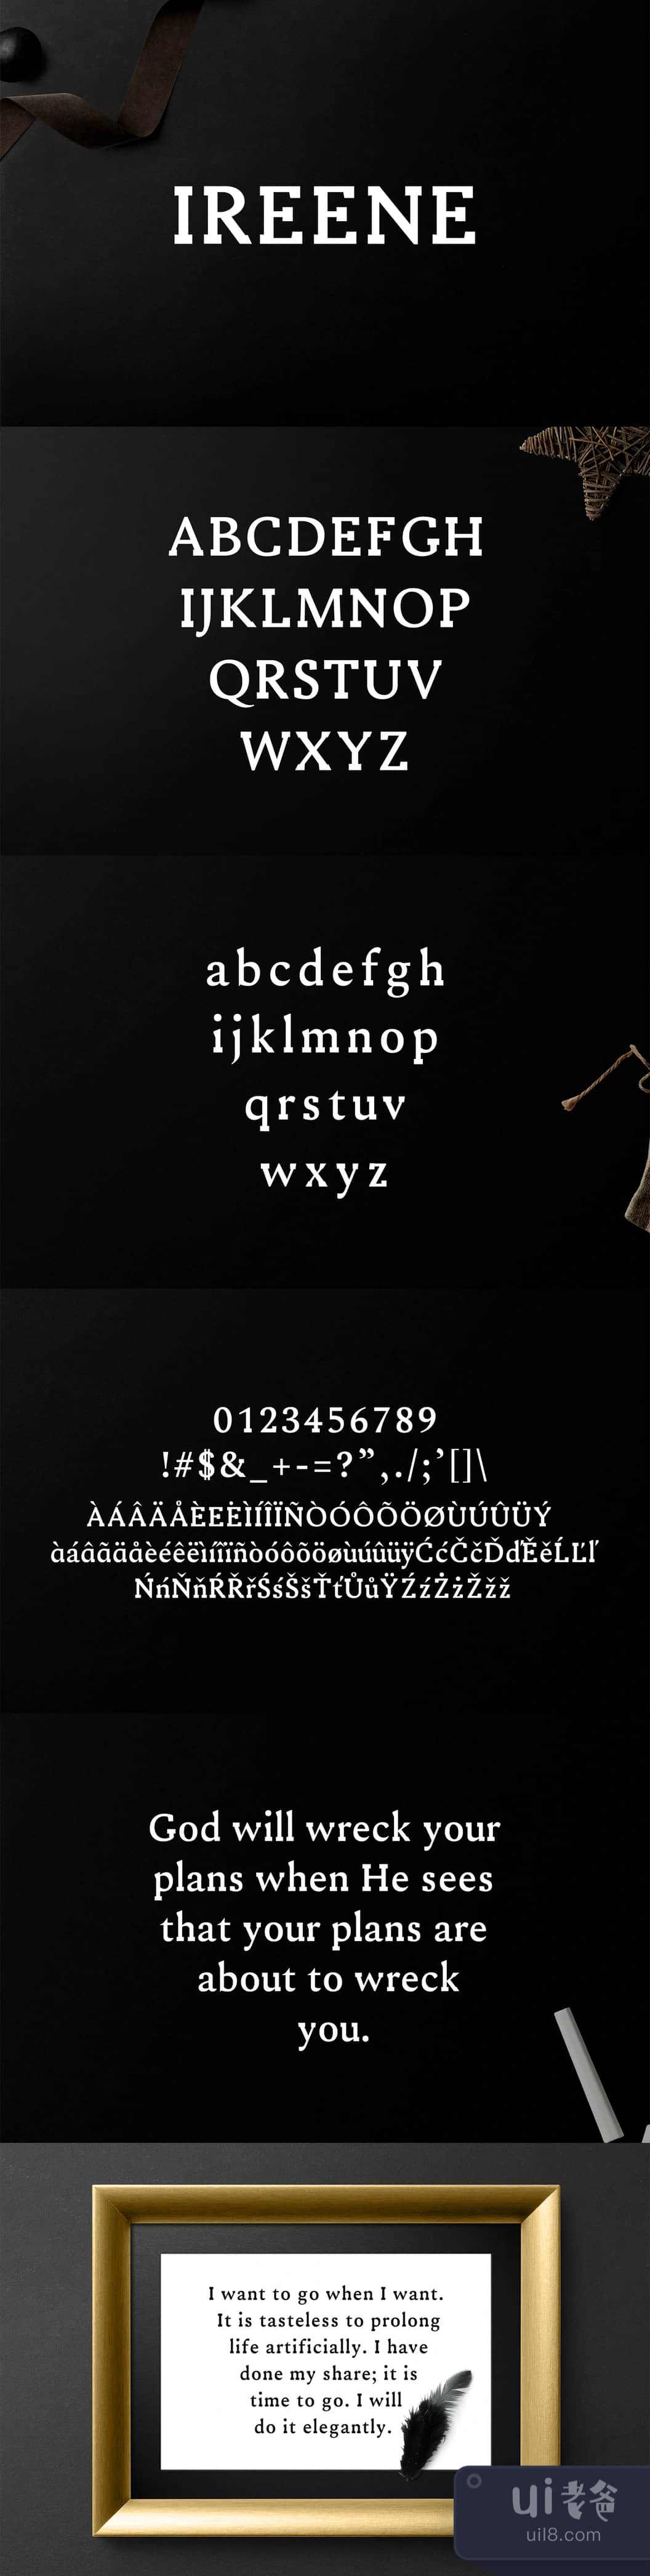 Ireene Serif字体家族 (Ireene Serif Font Family)插图